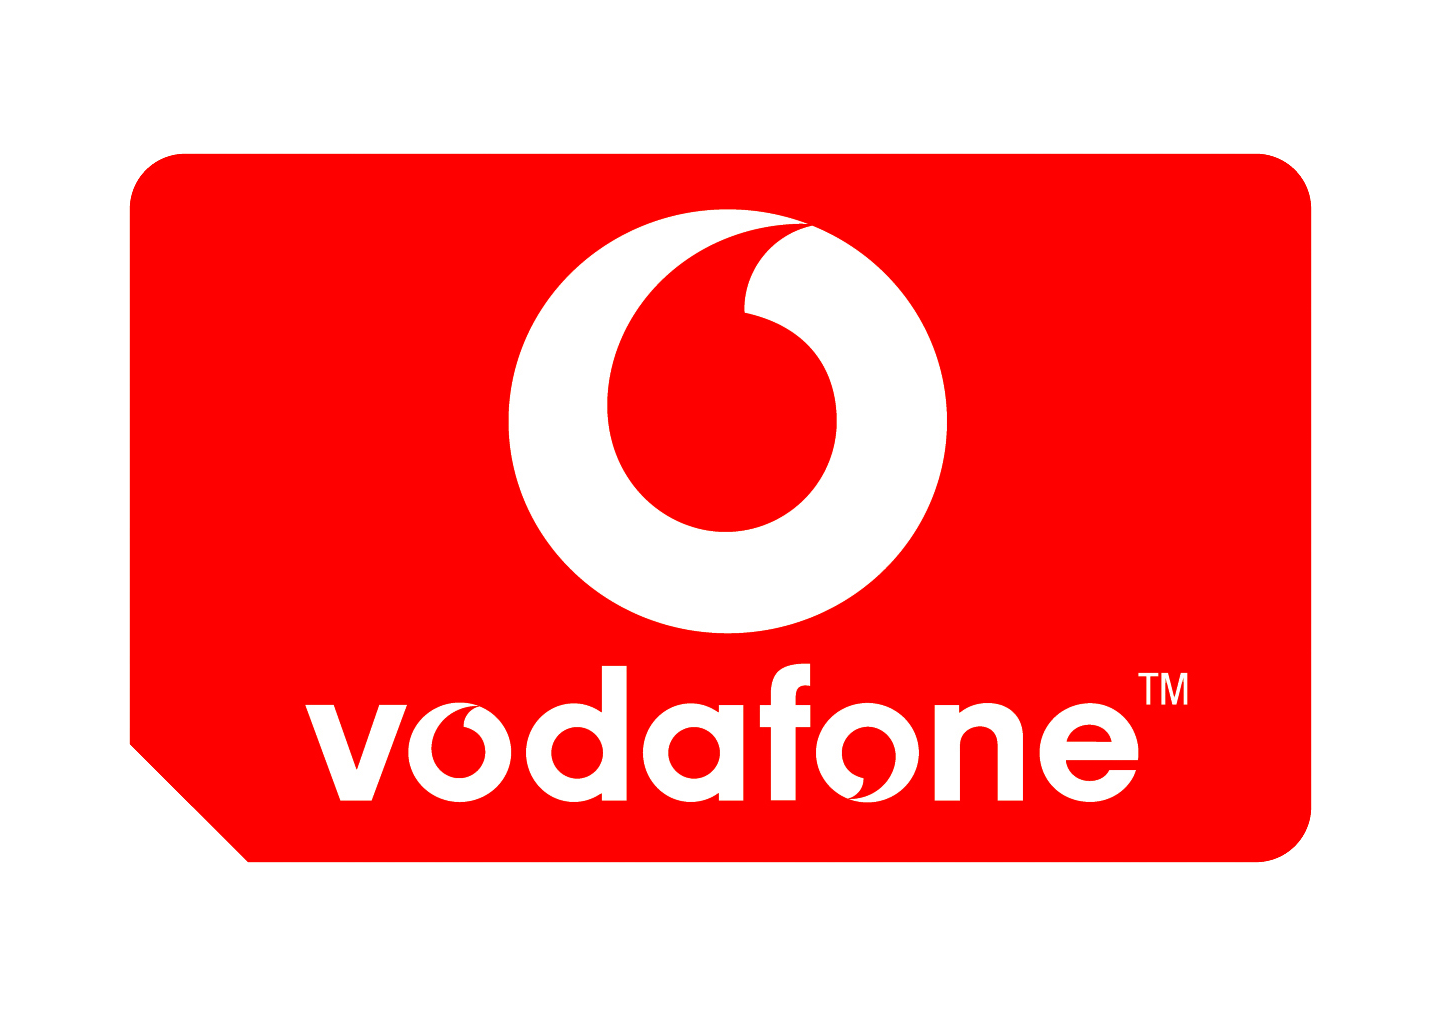 Vodafone_logo-old.png